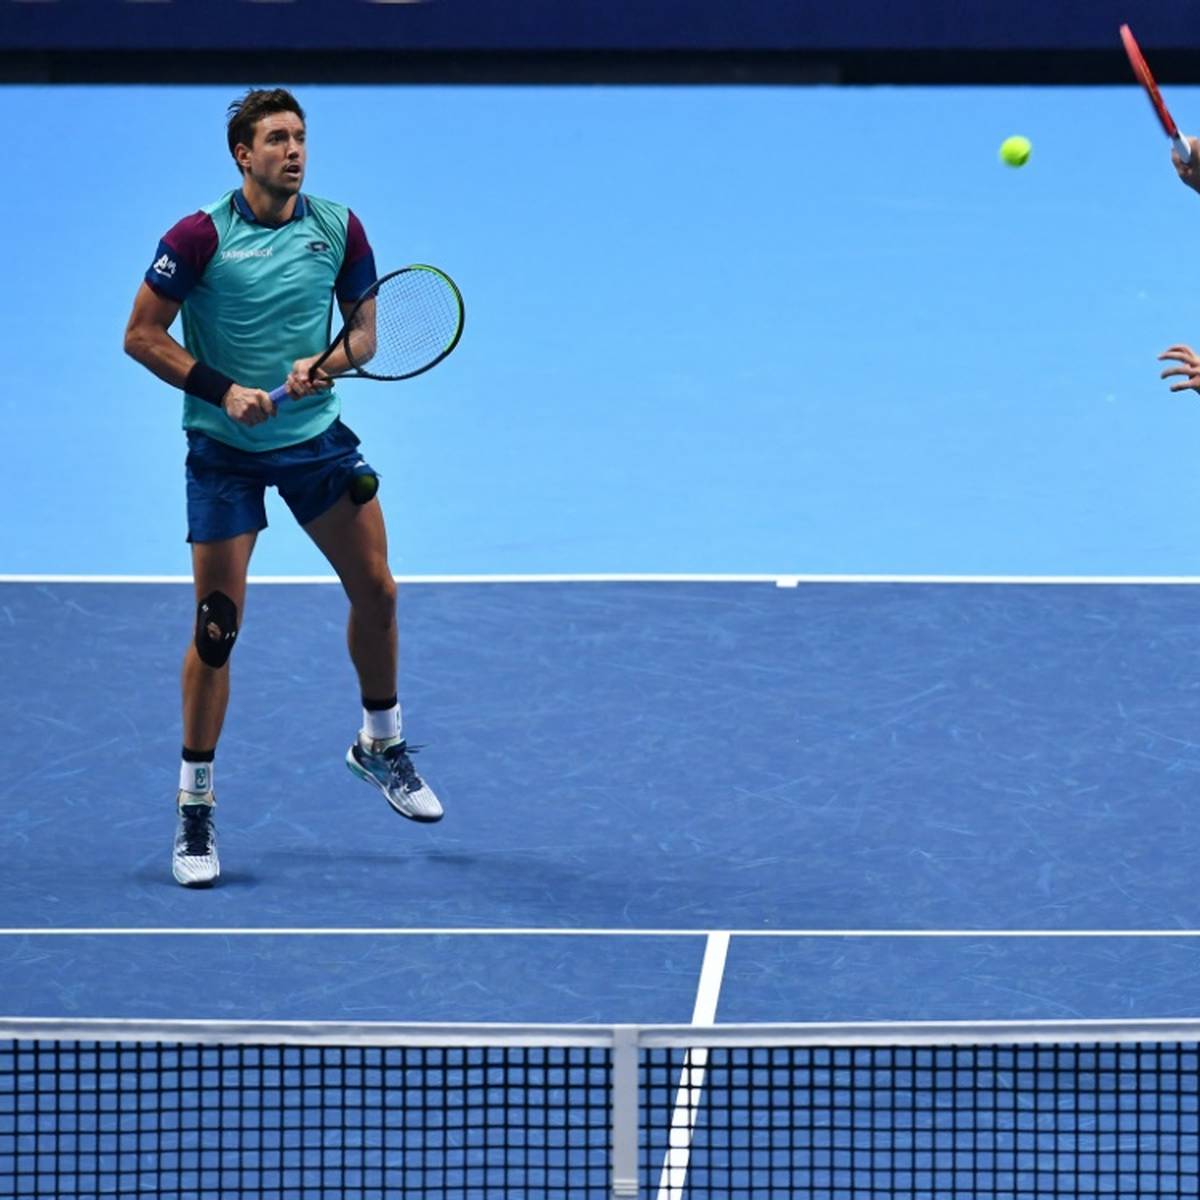 Enttäuschung für das Erfolgsdoppel Kevin Krawietz/Andreas Mies in Melbourne: Die zweimaligen French-Open-Sieger habe das Viertelfinale verpasst.